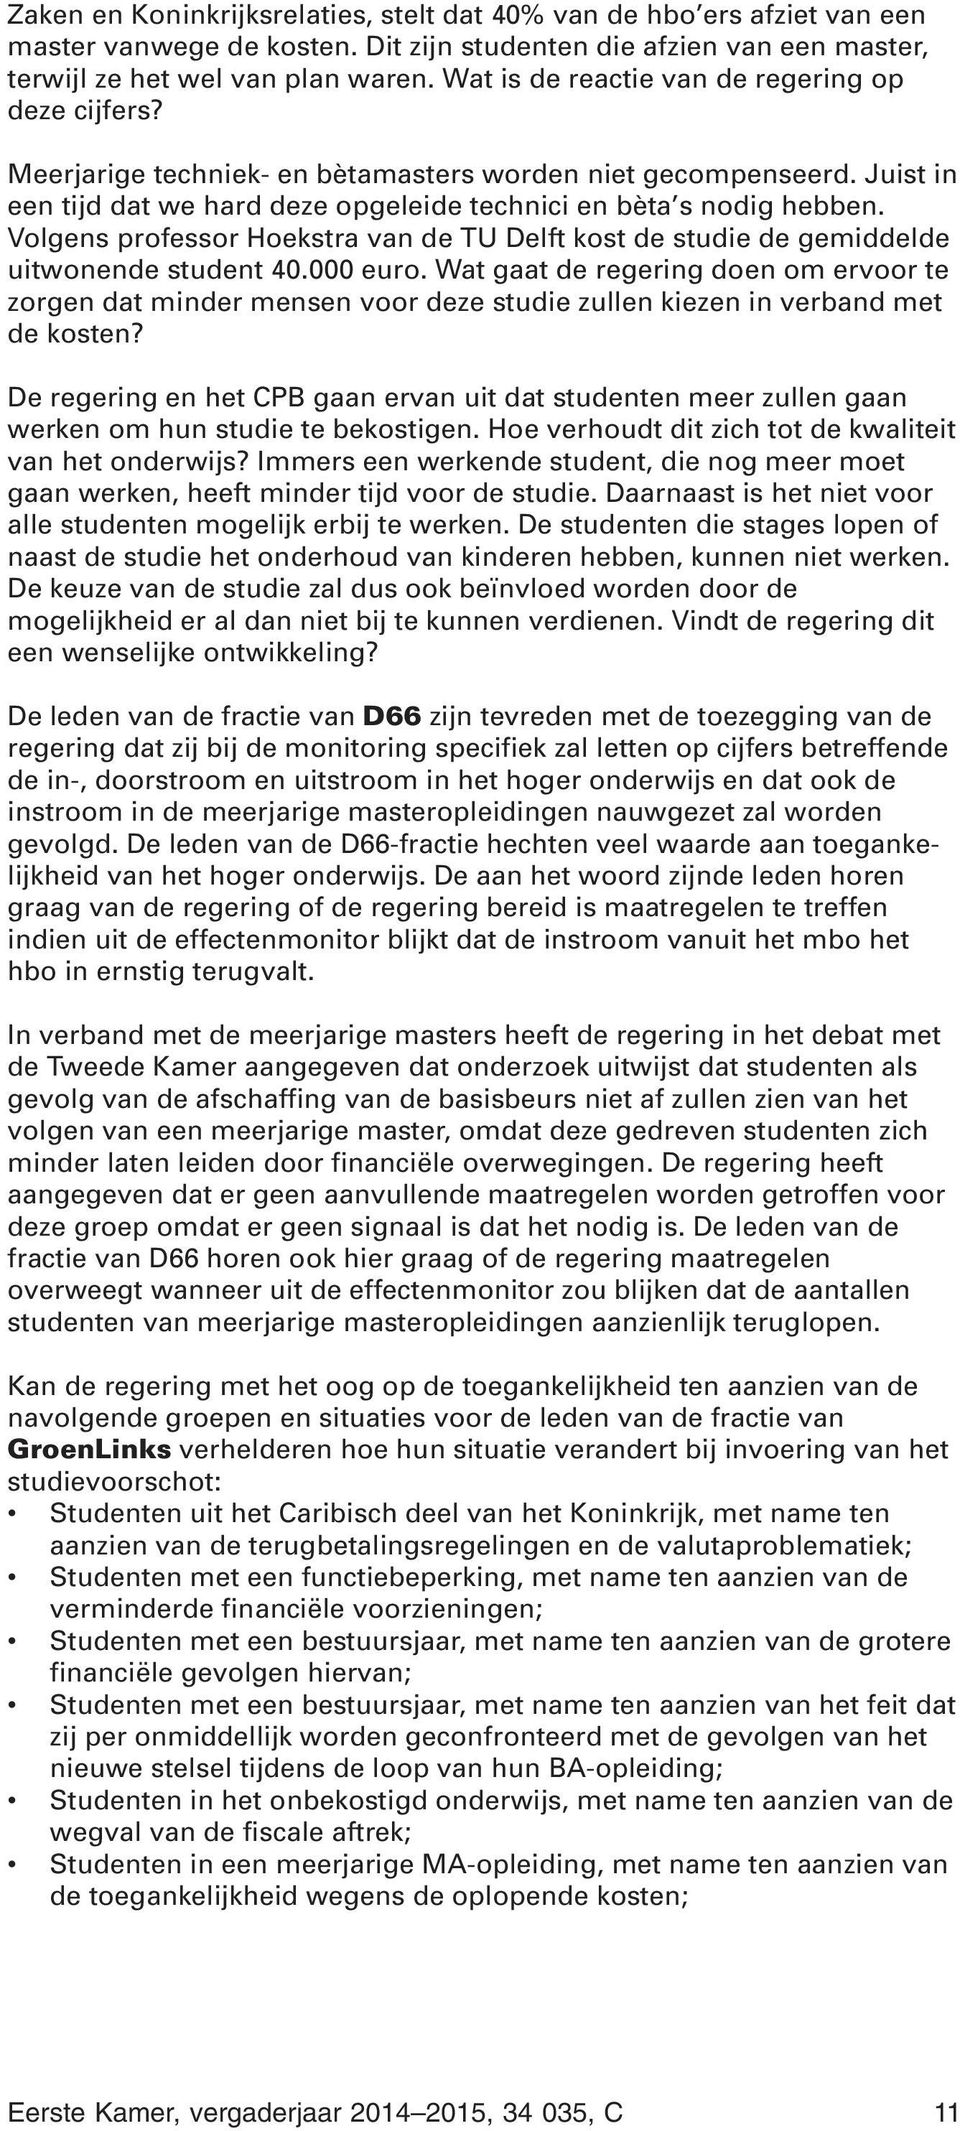 Volgens professor Hoekstra van de TU Delft kost de studie de gemiddelde uitwonende student 40.000 euro.